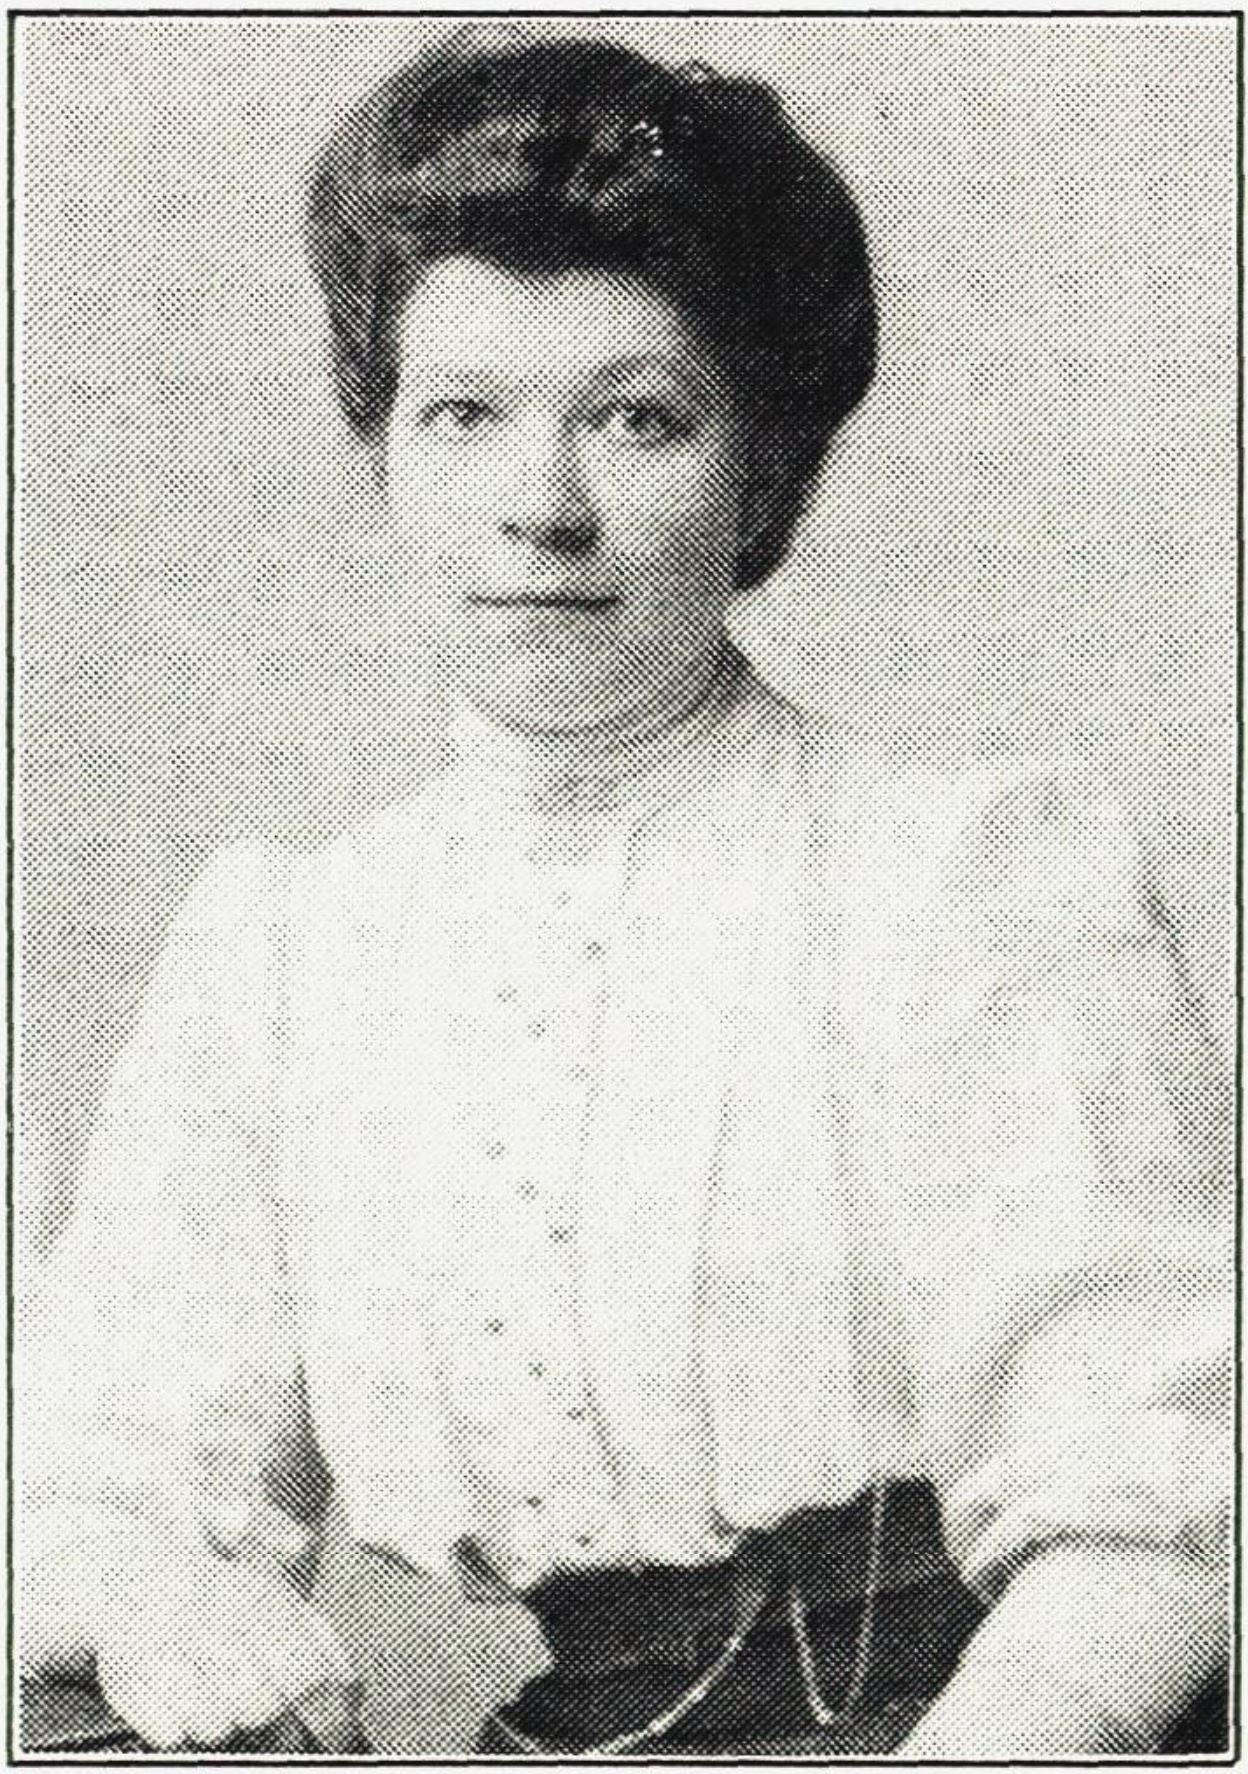 Anna Vaak var den første
«lærerinna» på Løken. Hun jobbet
der mellom 1901 og 1905. Kilde: Løken skole 110 år.